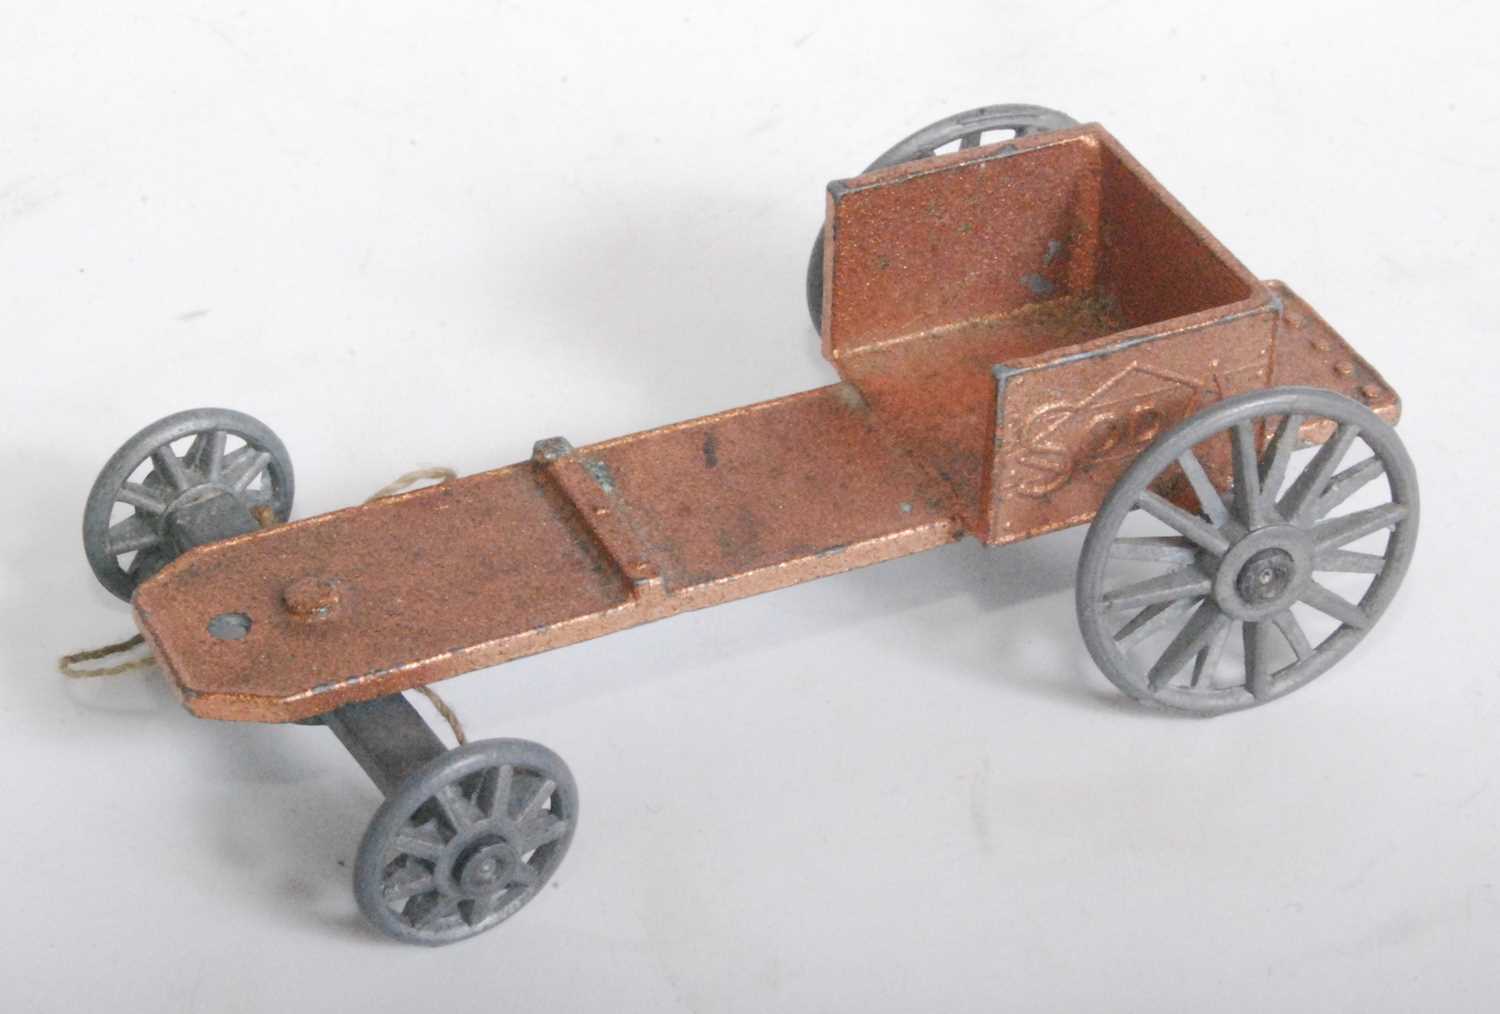 3D printed model Matchbox Lesney Moko Early Soapbox Racer model kit